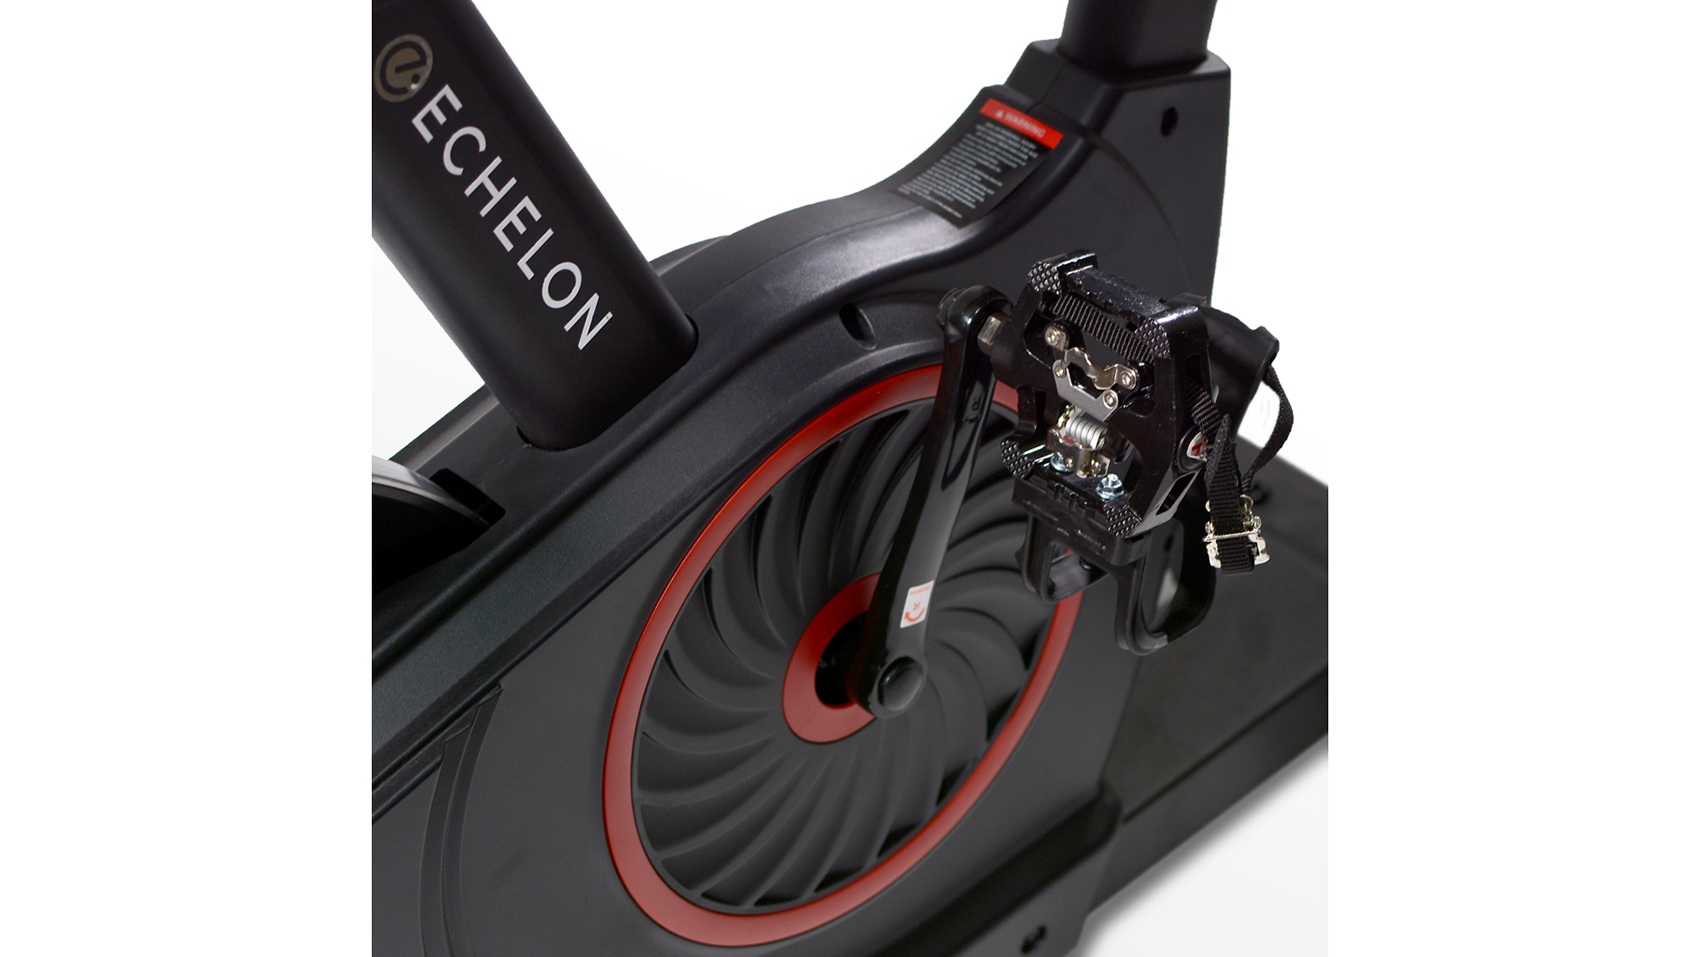 spd pedals for echelon